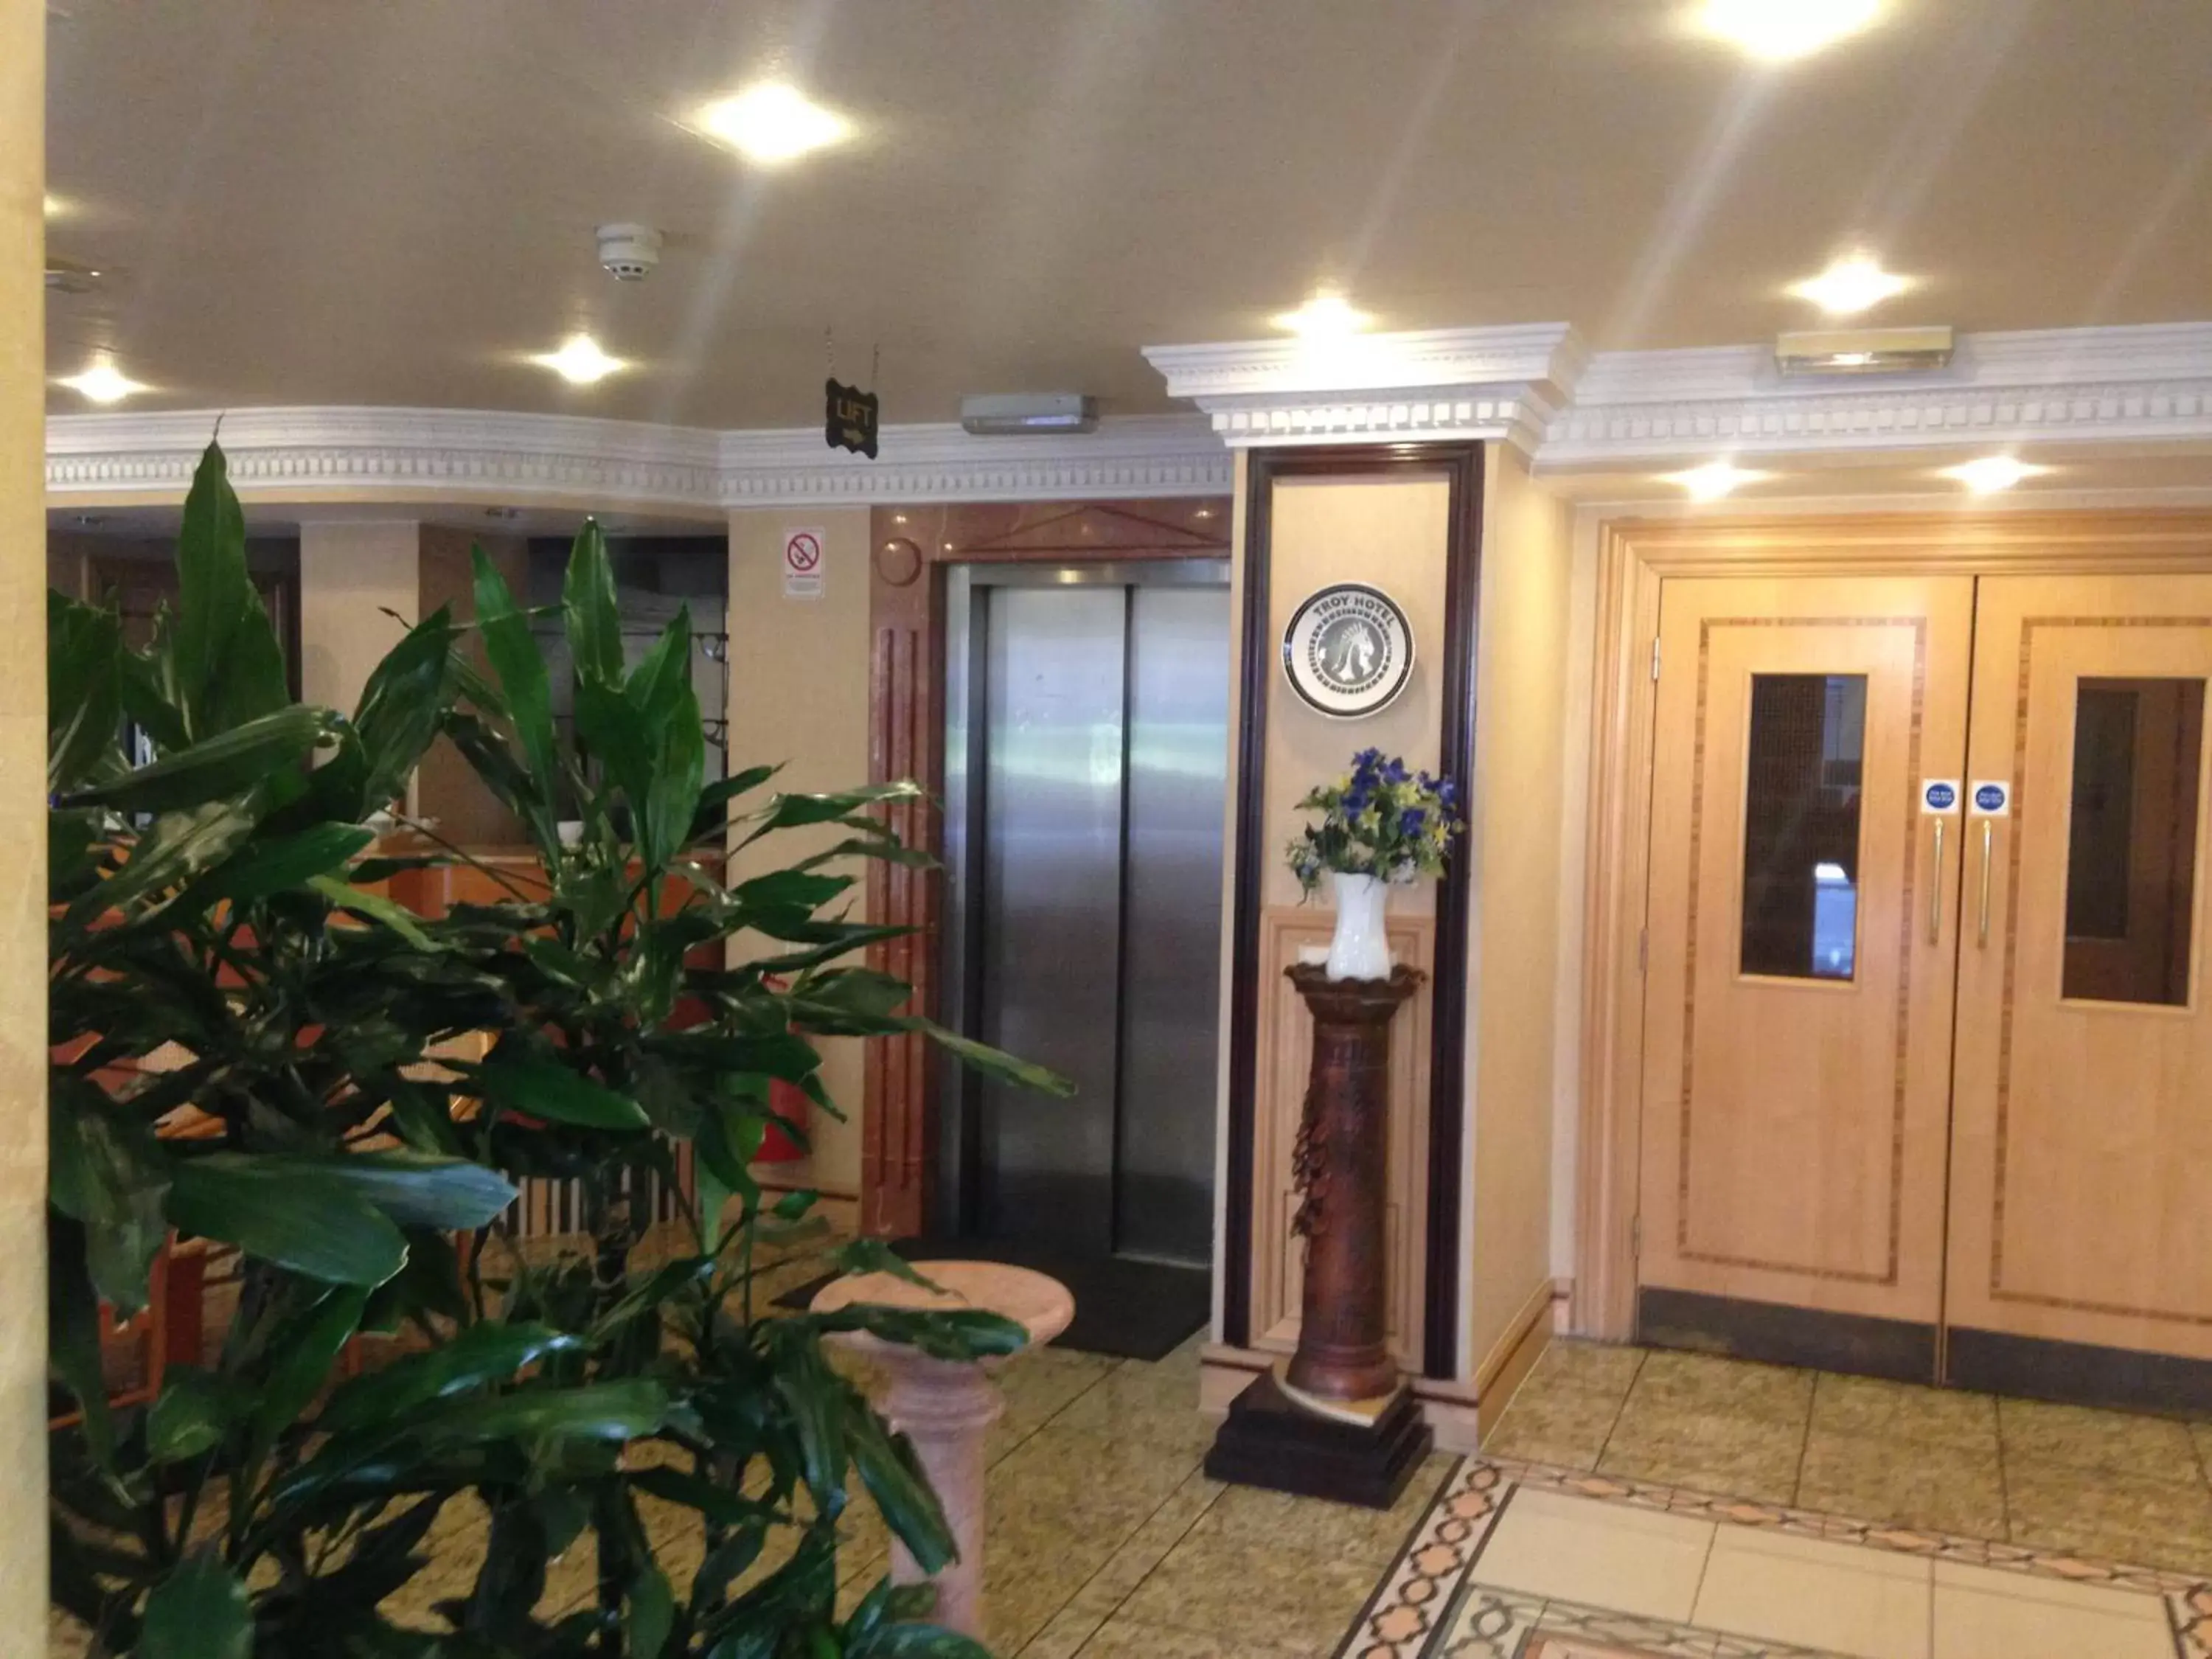 Lobby or reception, Lobby/Reception in Troy Hotel